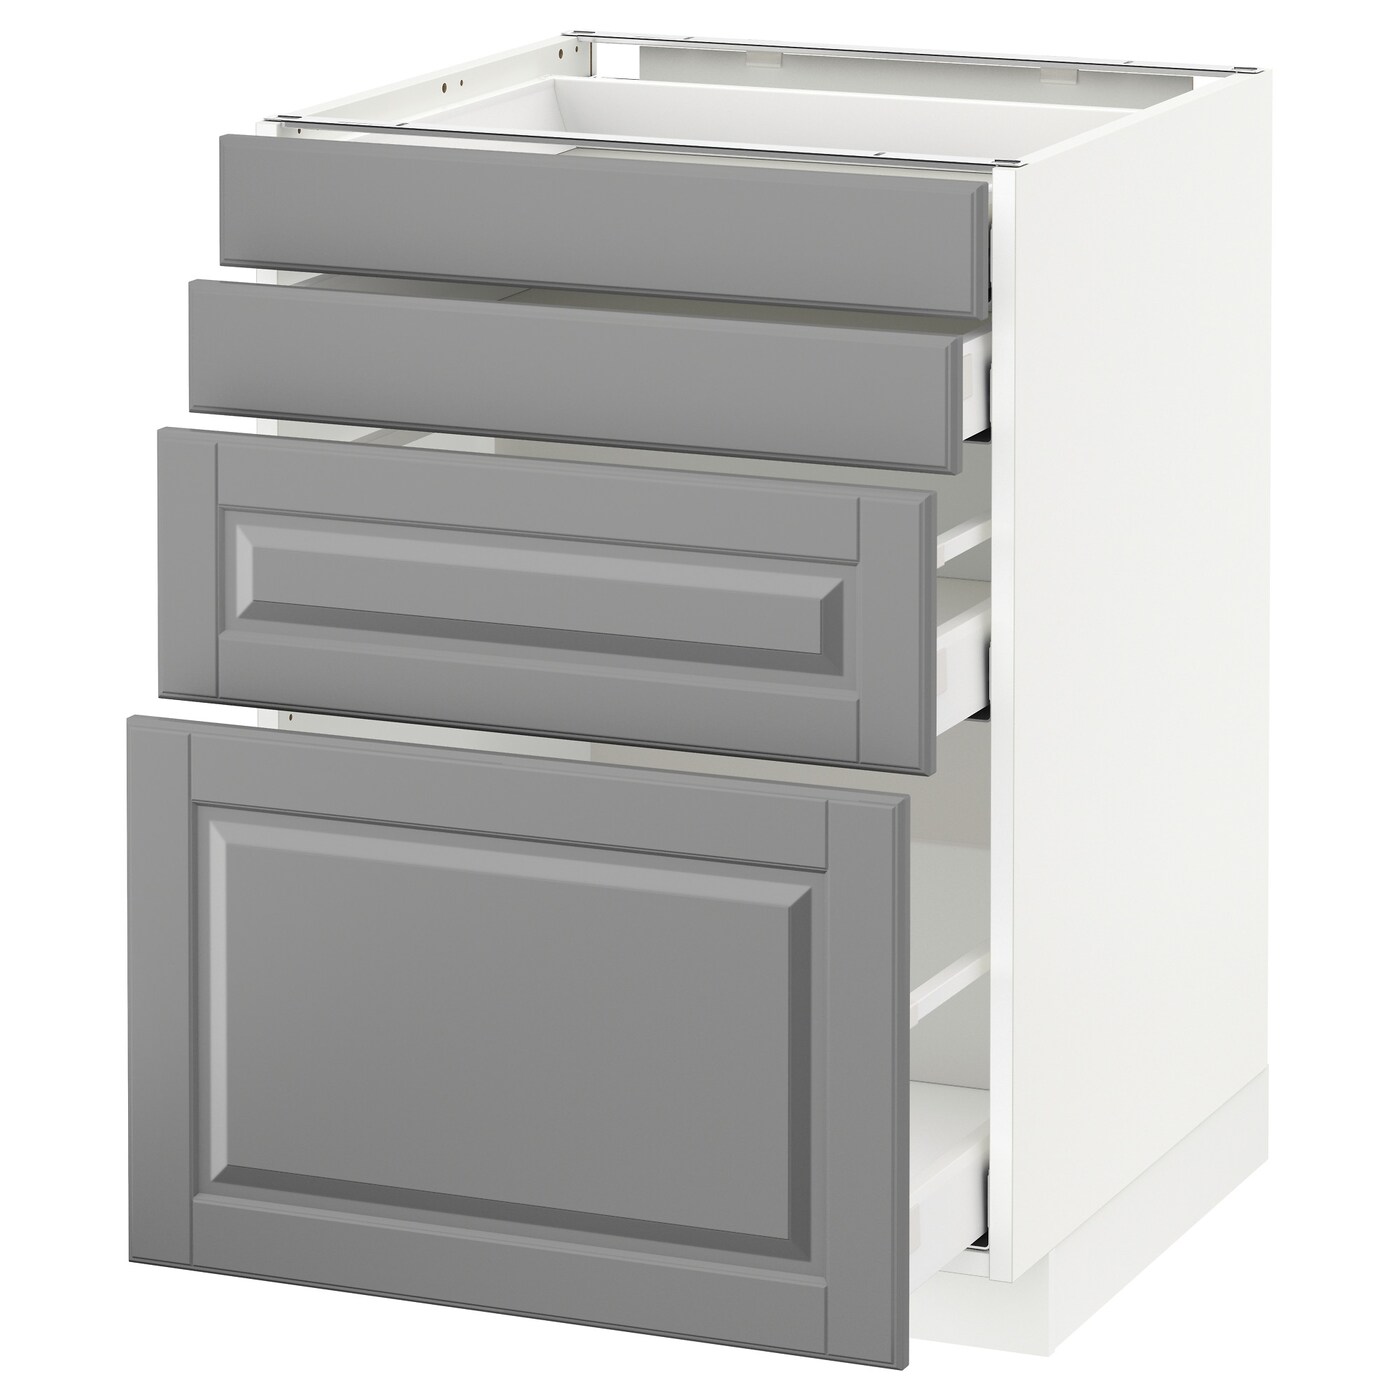 Напольный кухонный шкаф  - IKEA METOD MAXIMERA, 88x62x60см, белый/серый, МЕТОД МАКСИМЕРА ИКЕА